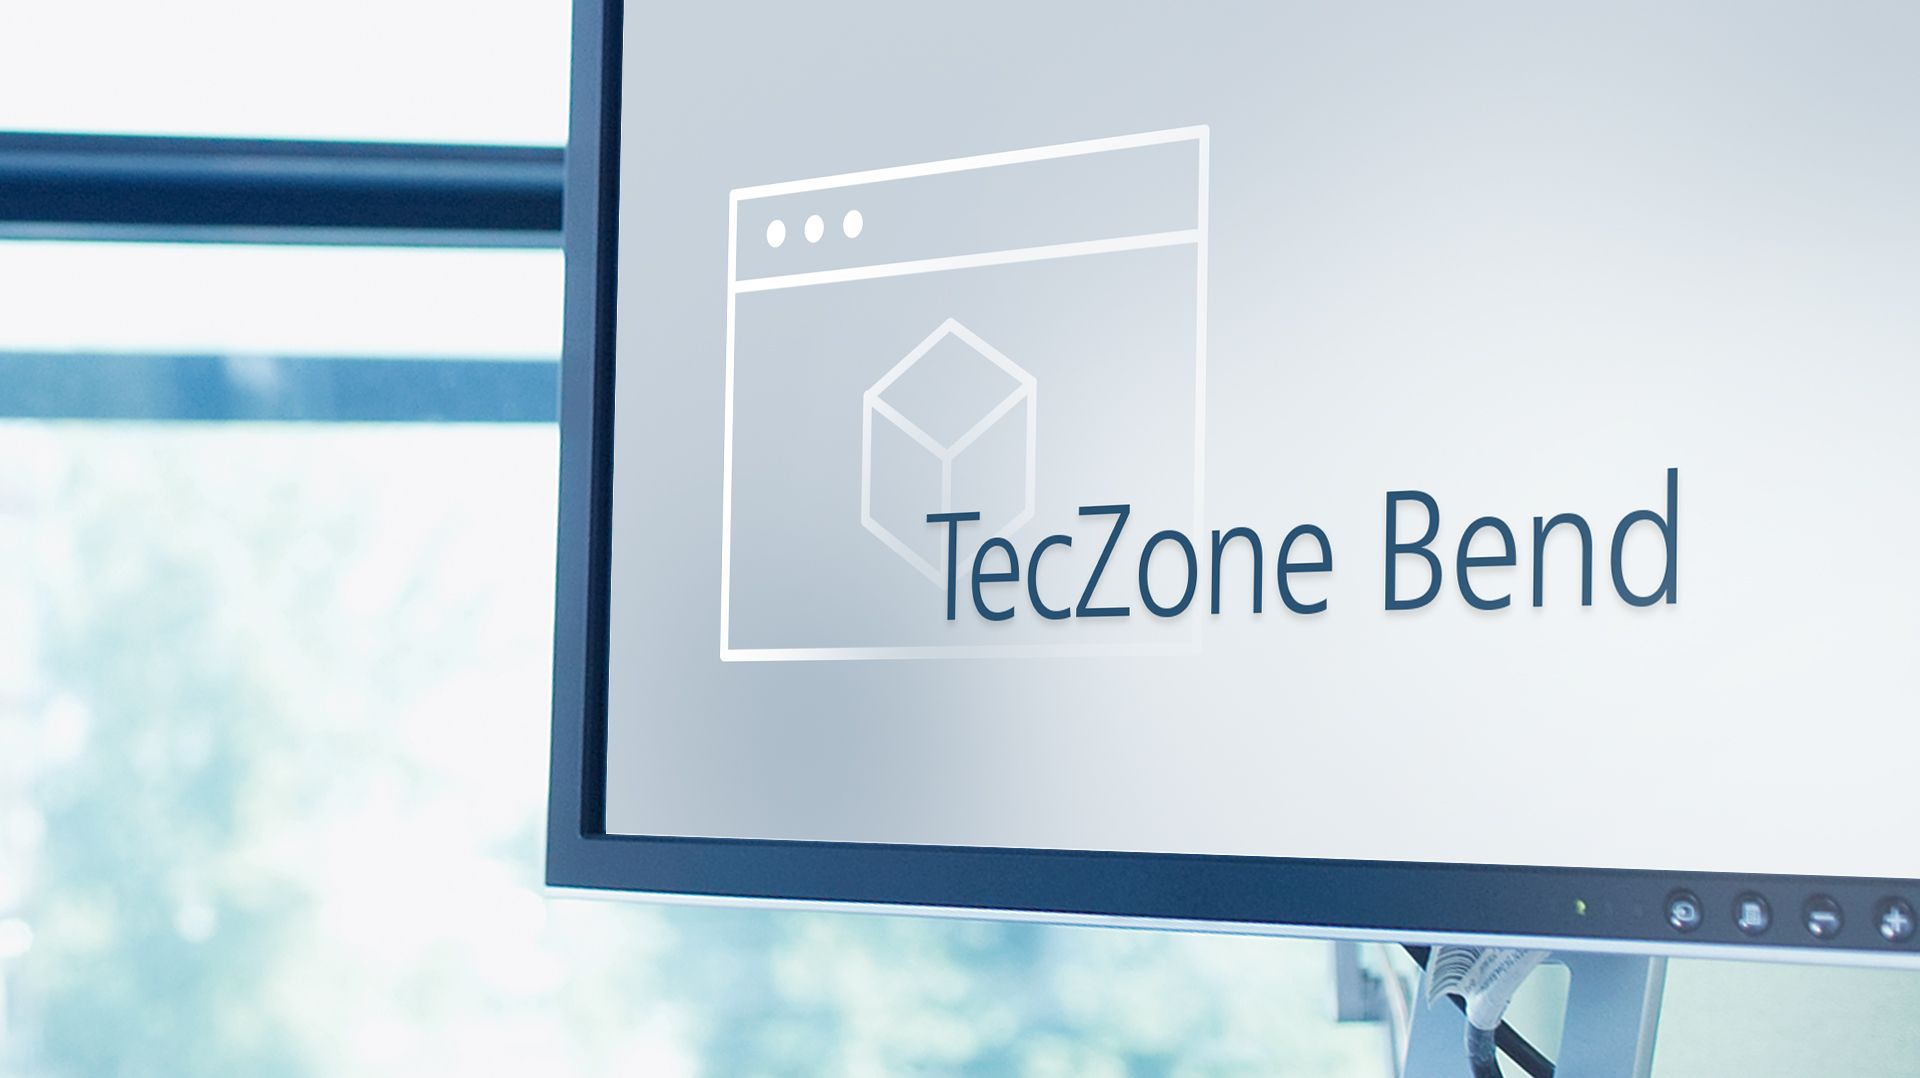 TRUMPF RA 控制系統與 TecZone Bend 試用許可證